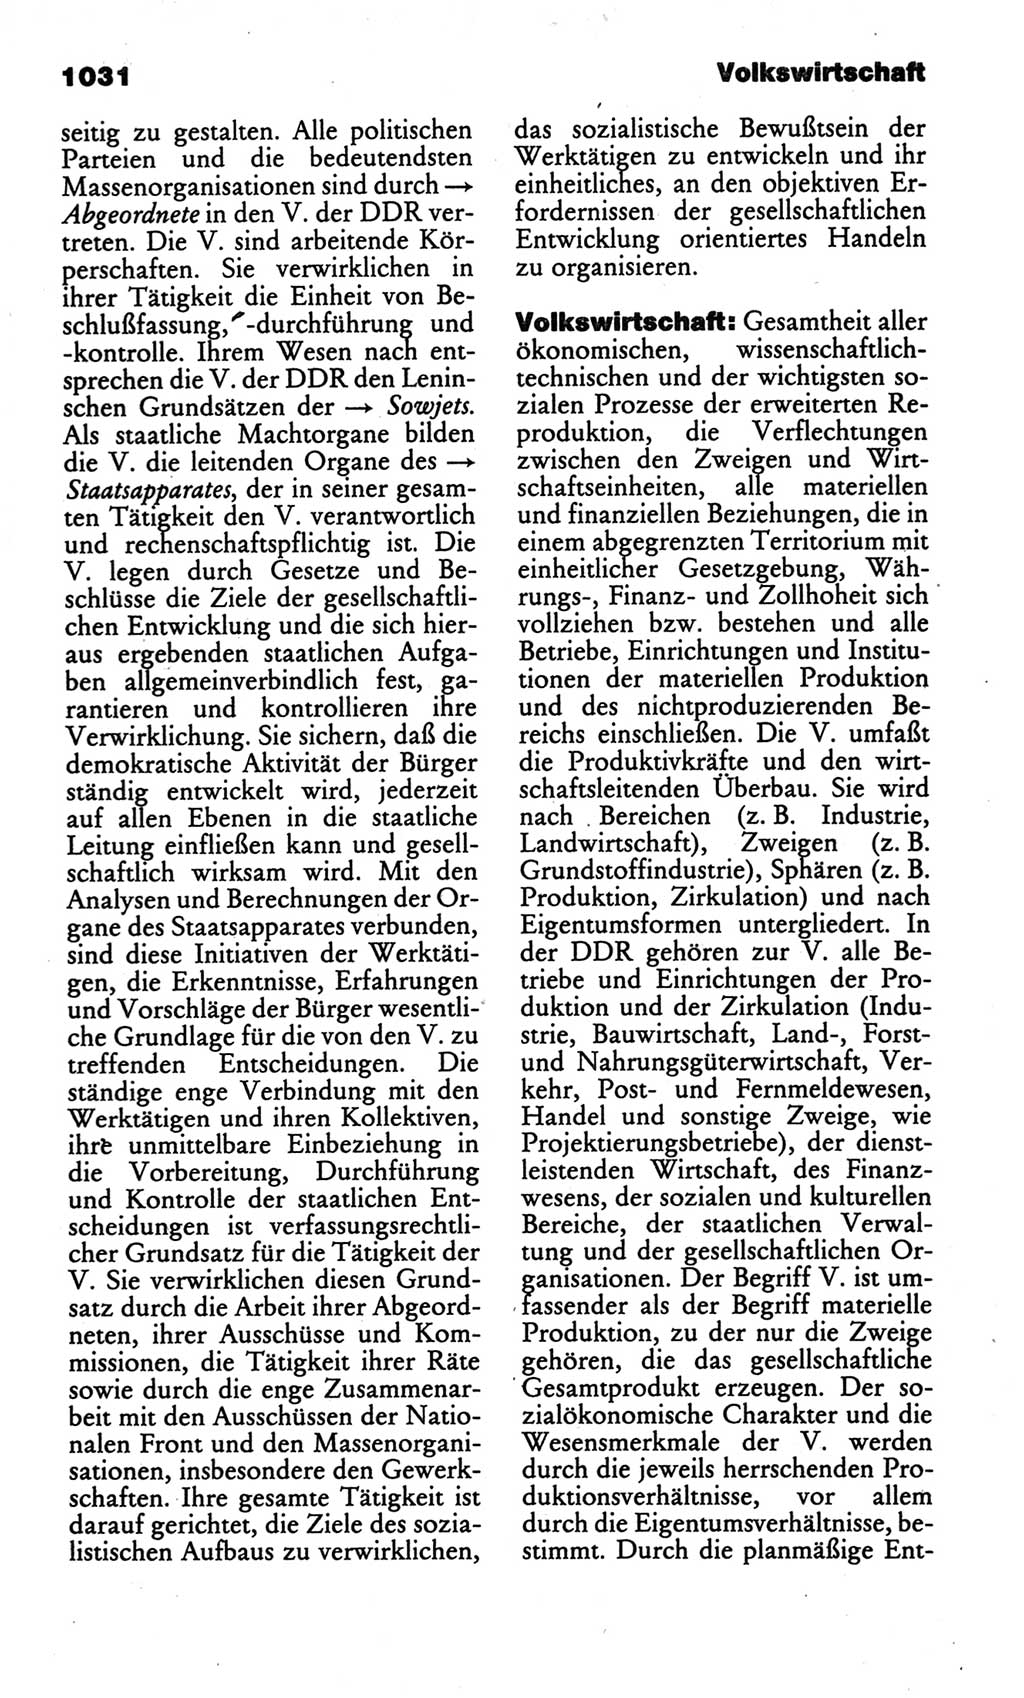 Kleines politisches Wörterbuch [Deutsche Demokratische Republik (DDR)] 1986, Seite 1031 (Kl. pol. Wb. DDR 1986, S. 1031)